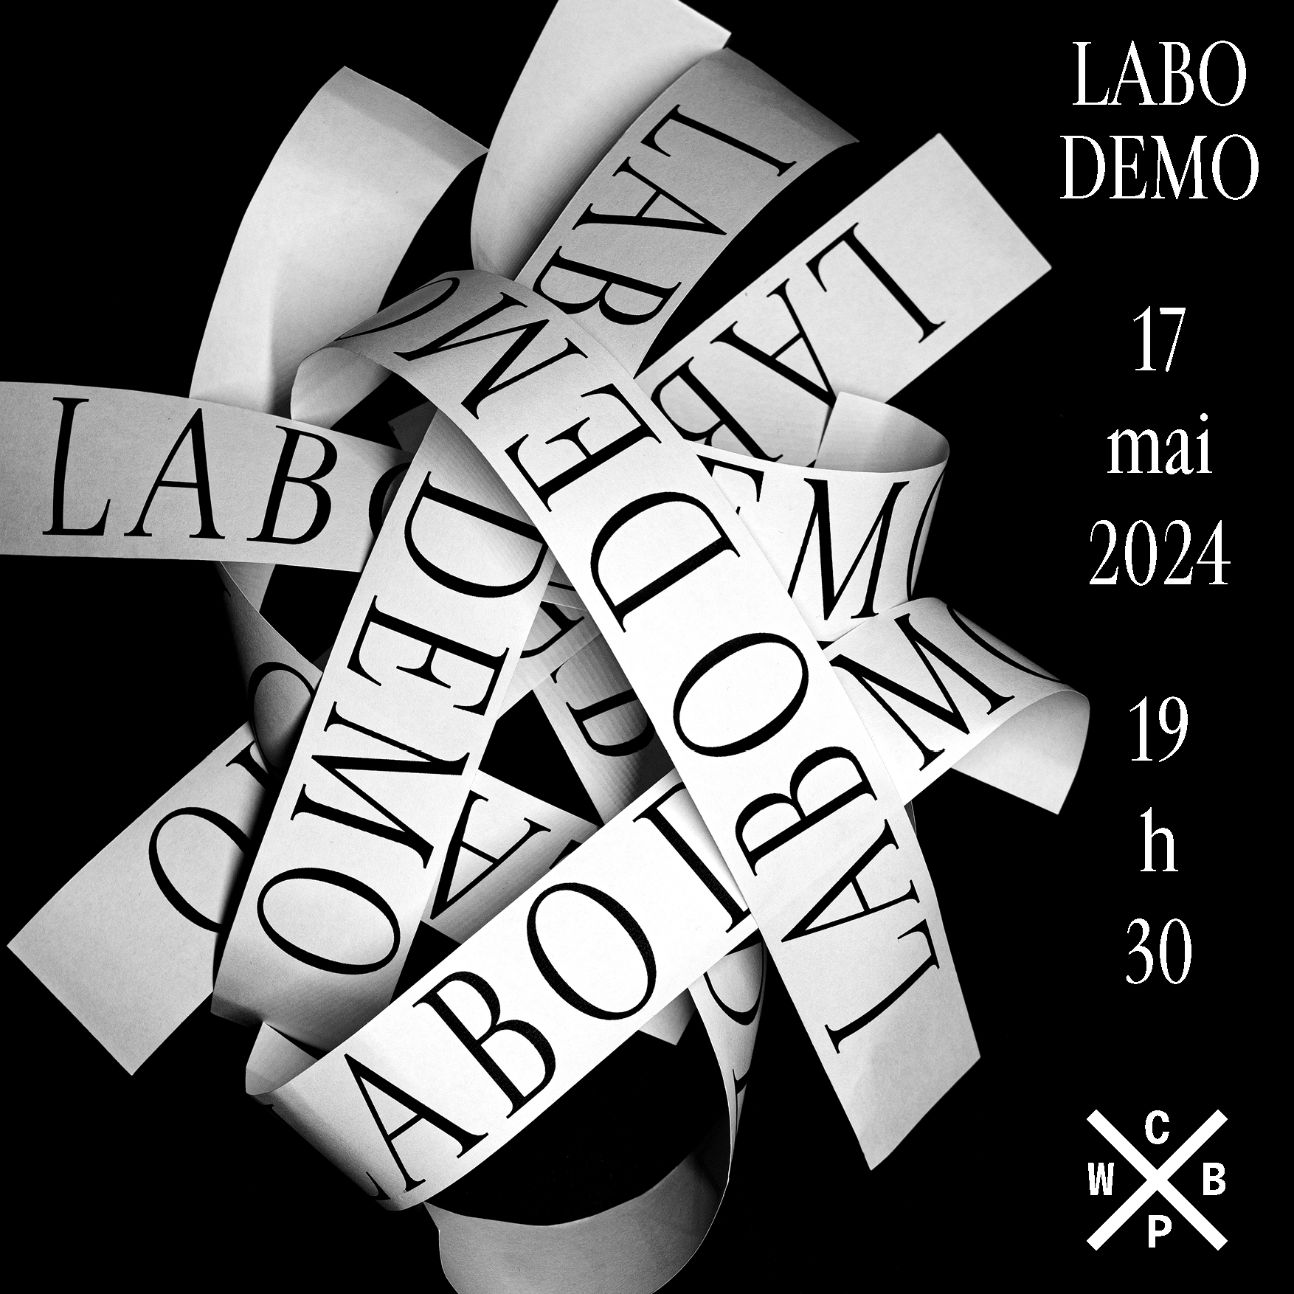 Labo_Demo. Création littéraire émergente (Centre Wallonie-Bruxelles à Paris)